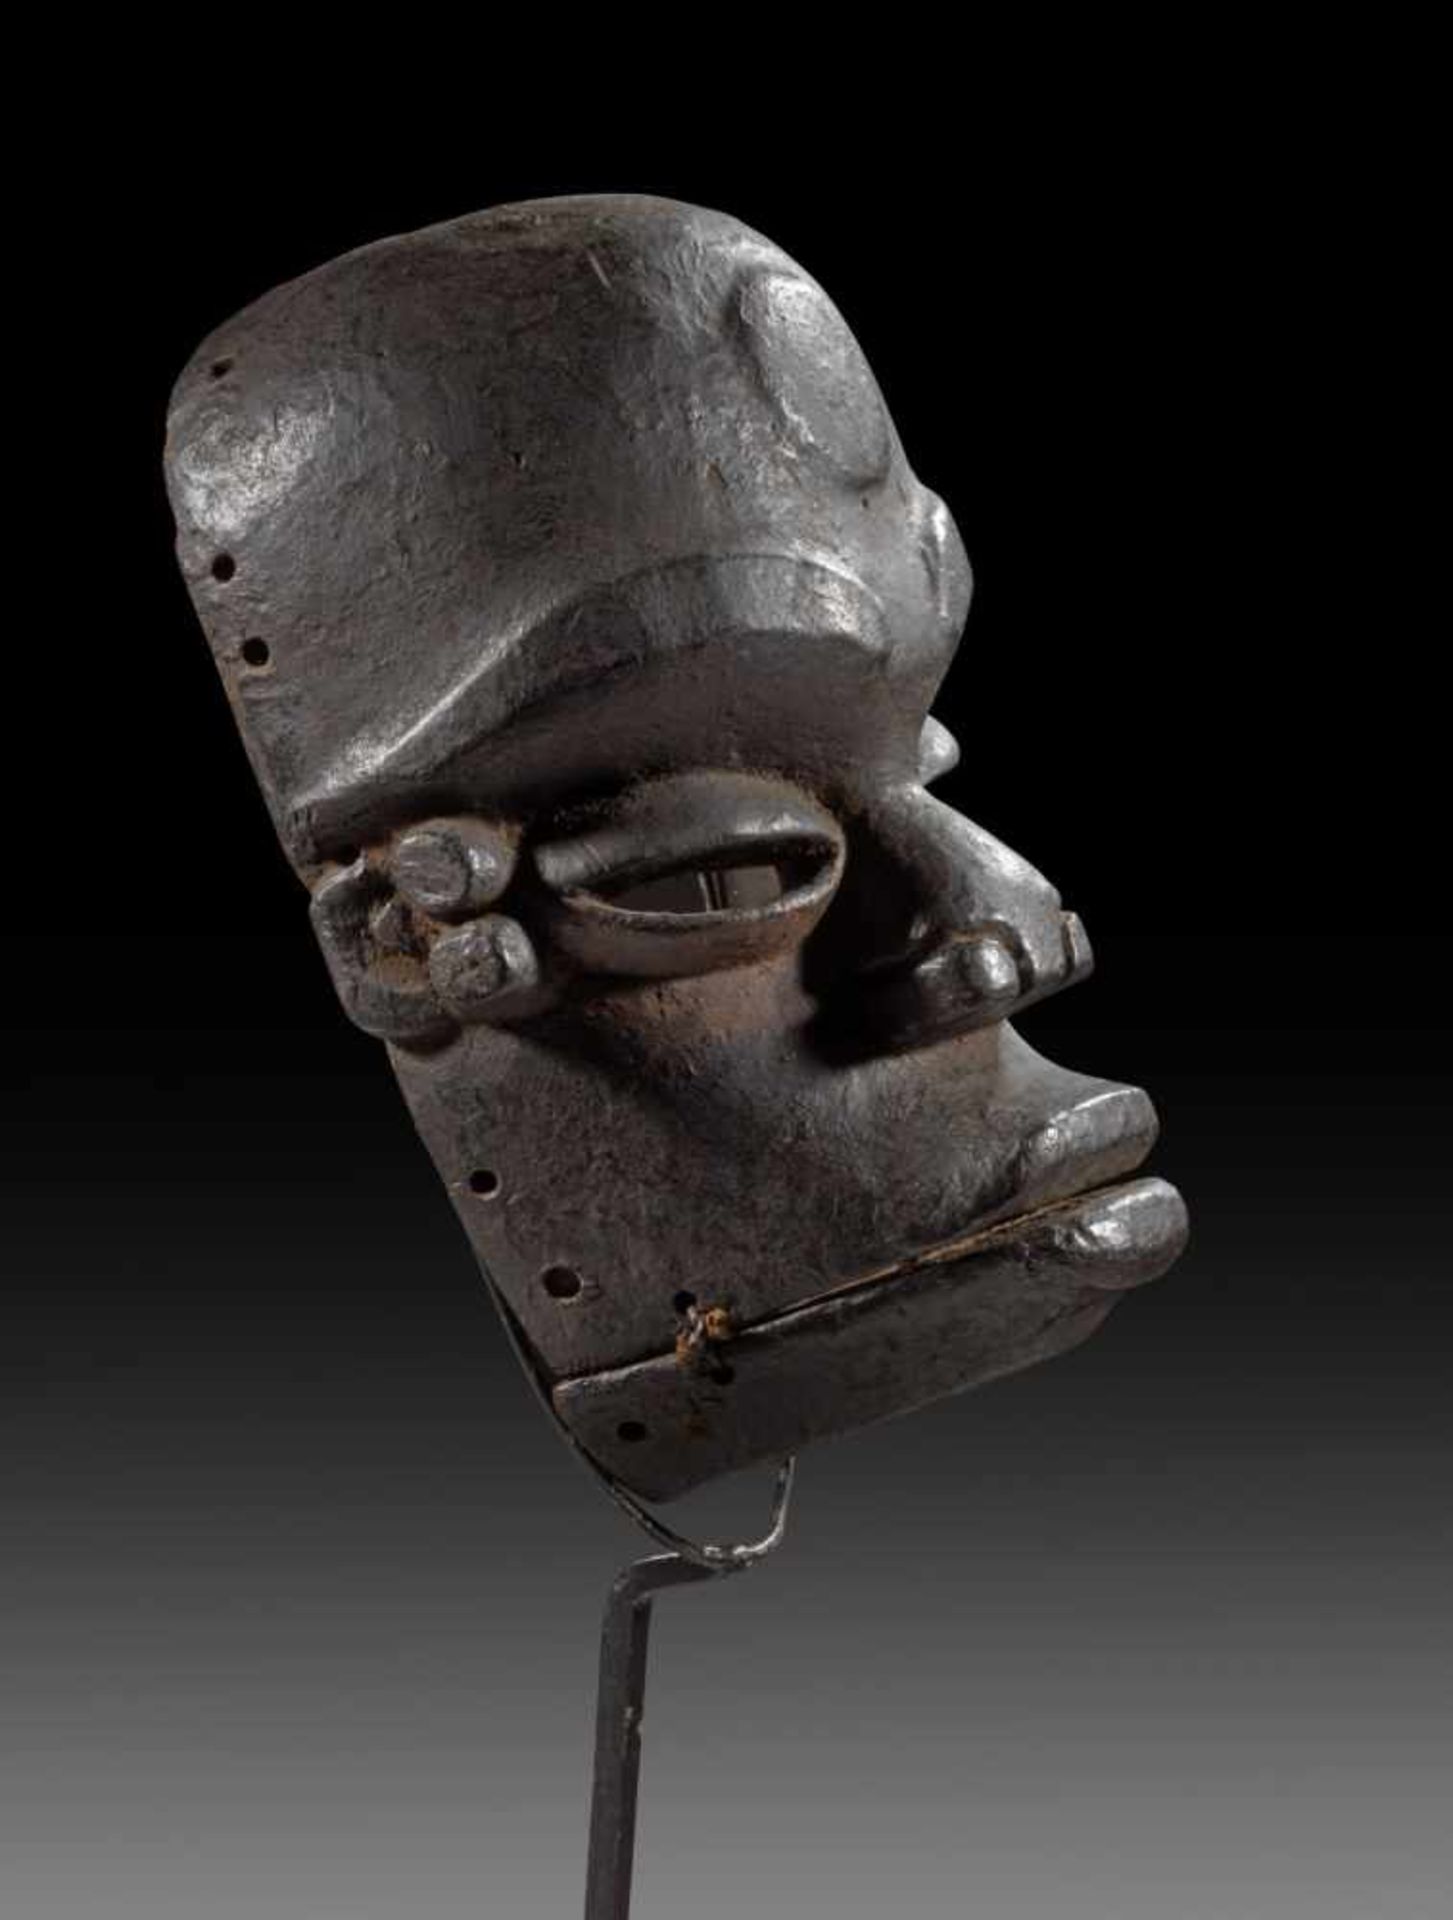 Klappkiefer-Maske 'idiok ekpo'. Nördliche Ibo, Nigeria. H 26cm. Mit prominent gestalteten - Bild 2 aus 2